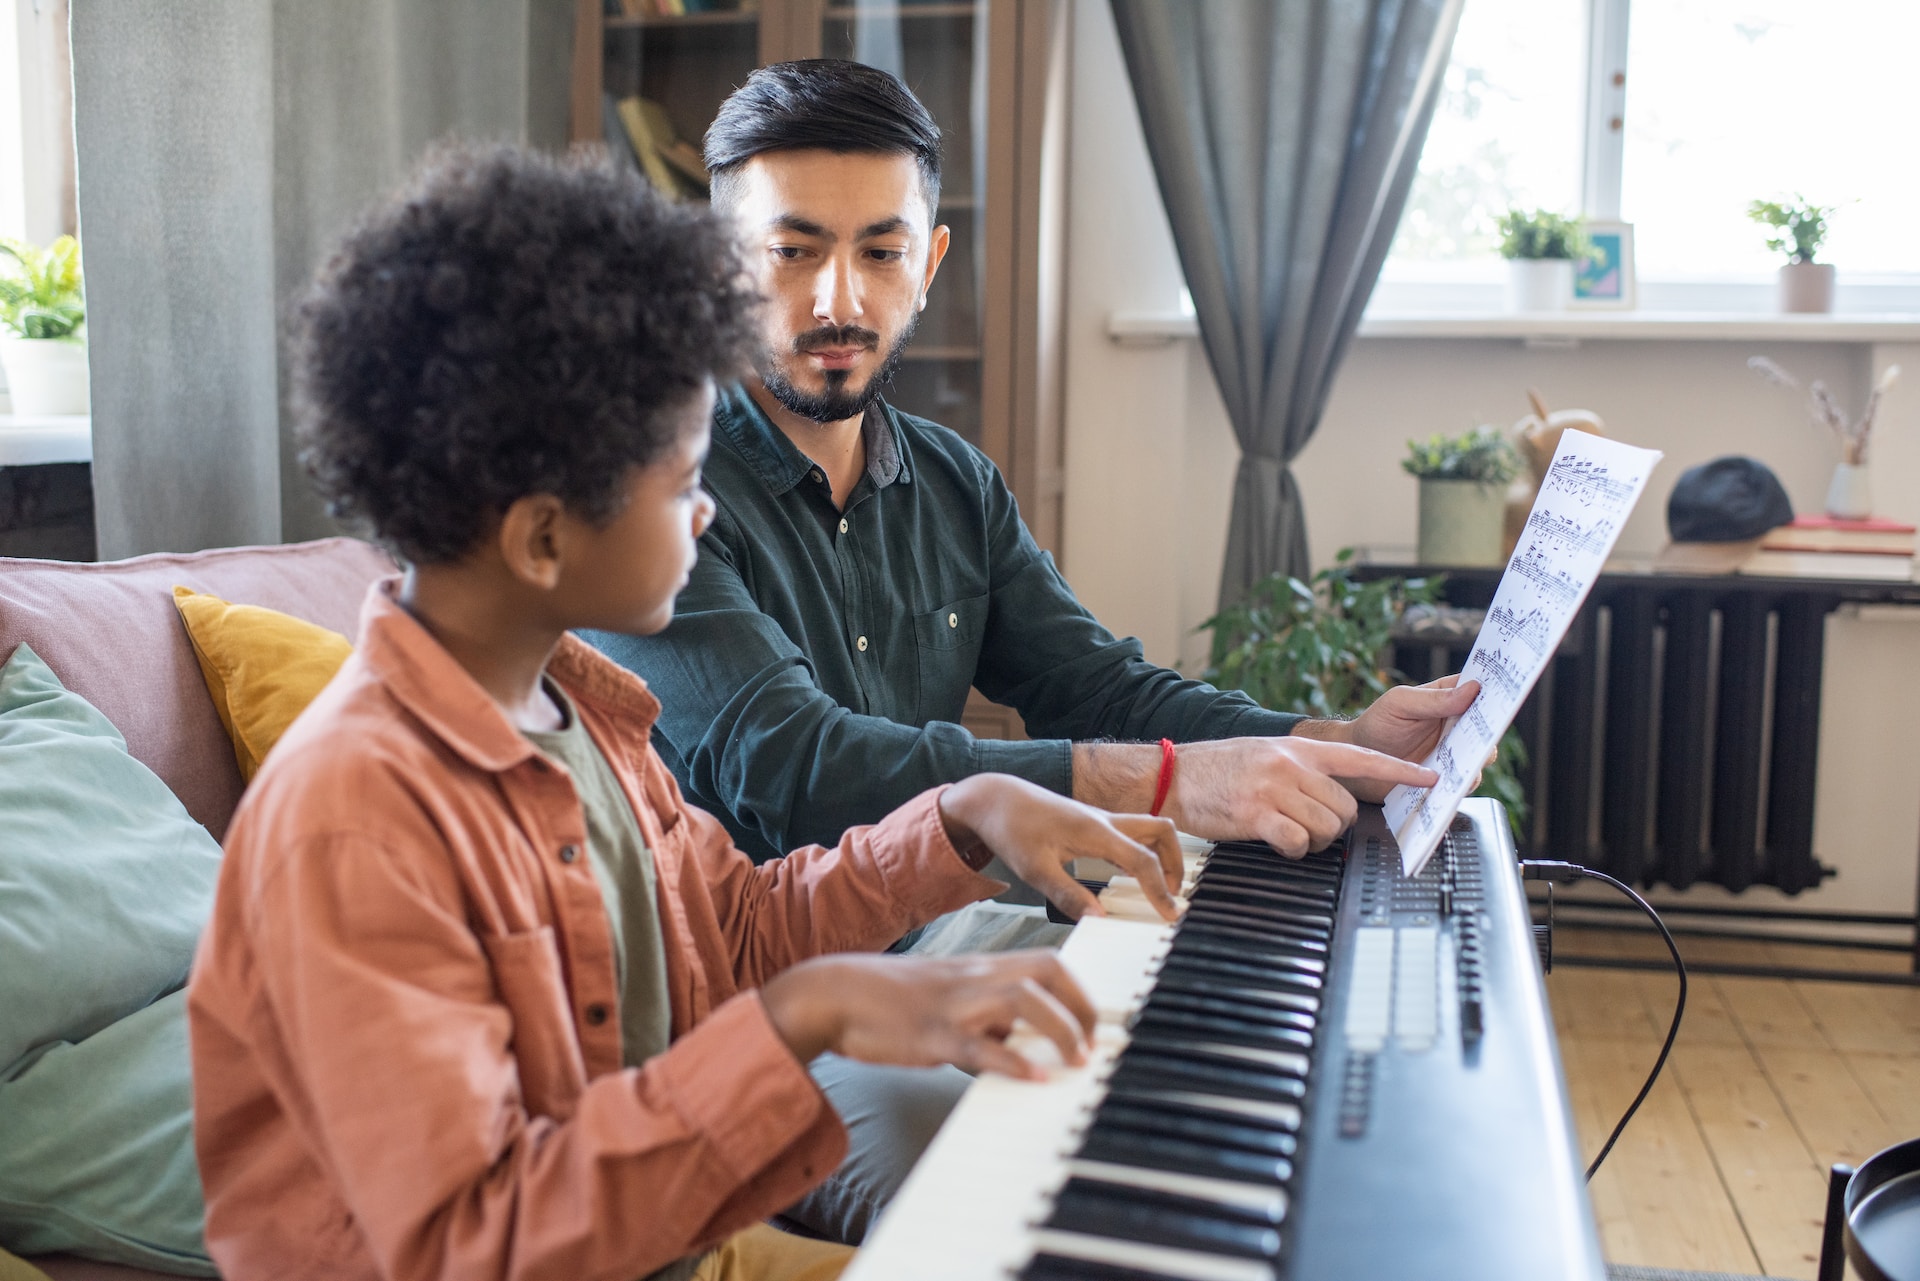 Comment apprendre la musique avec le piano ?